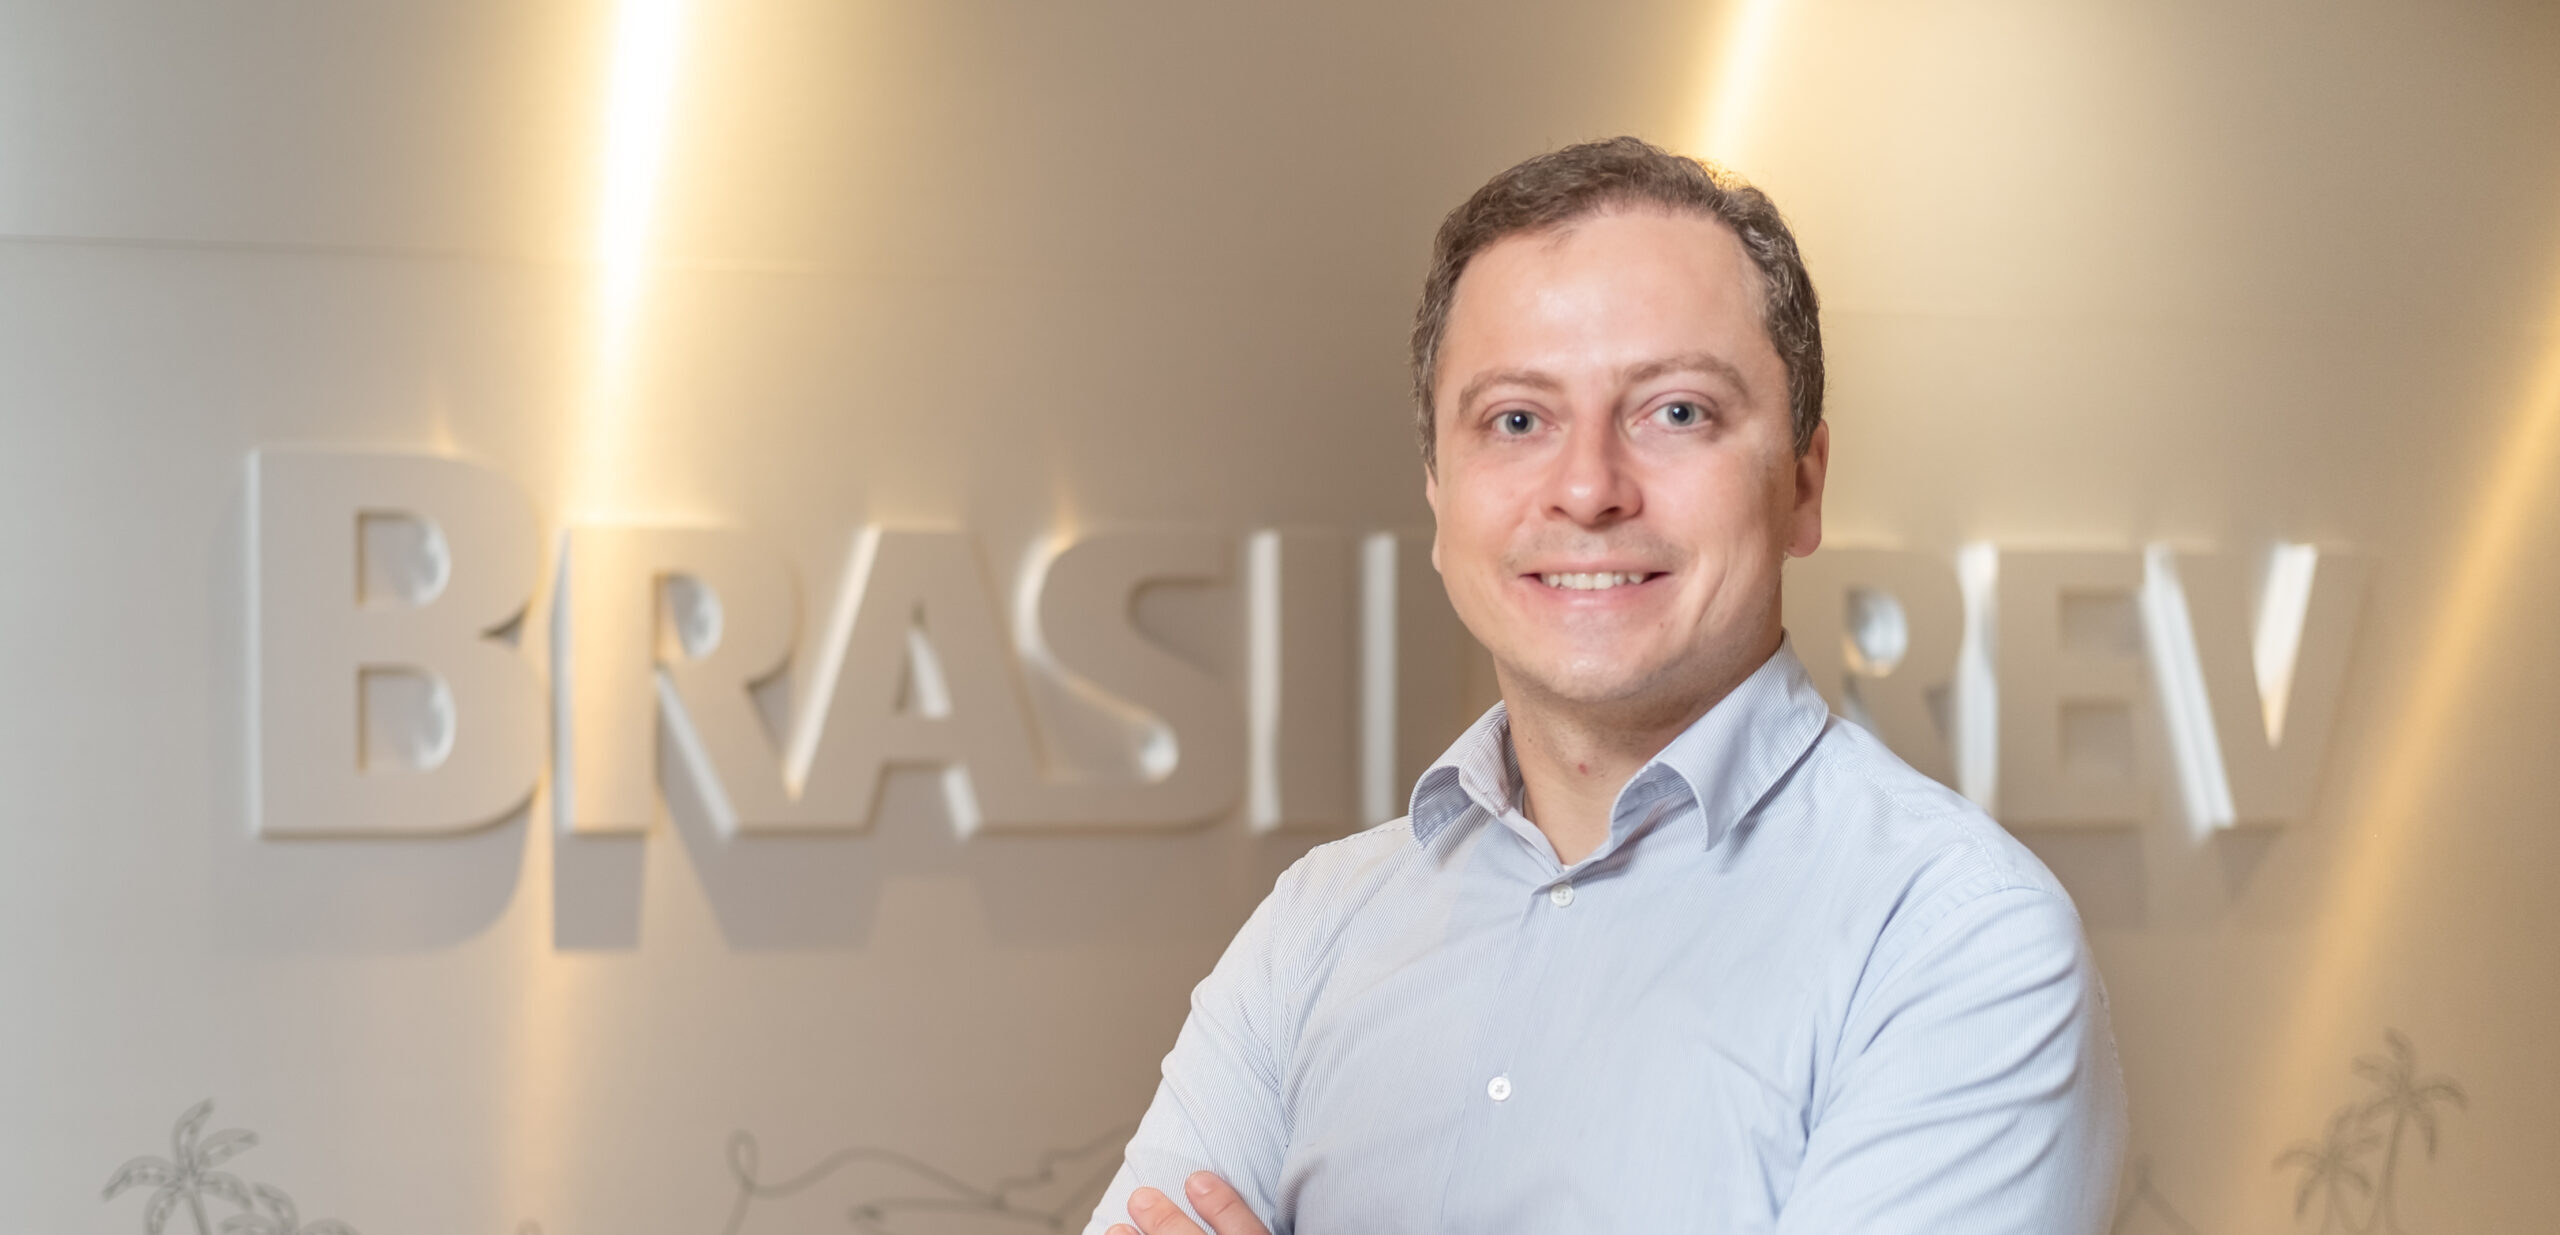 Brasilprev anuncia novo superintendente de Dados Revista Insurance Corp